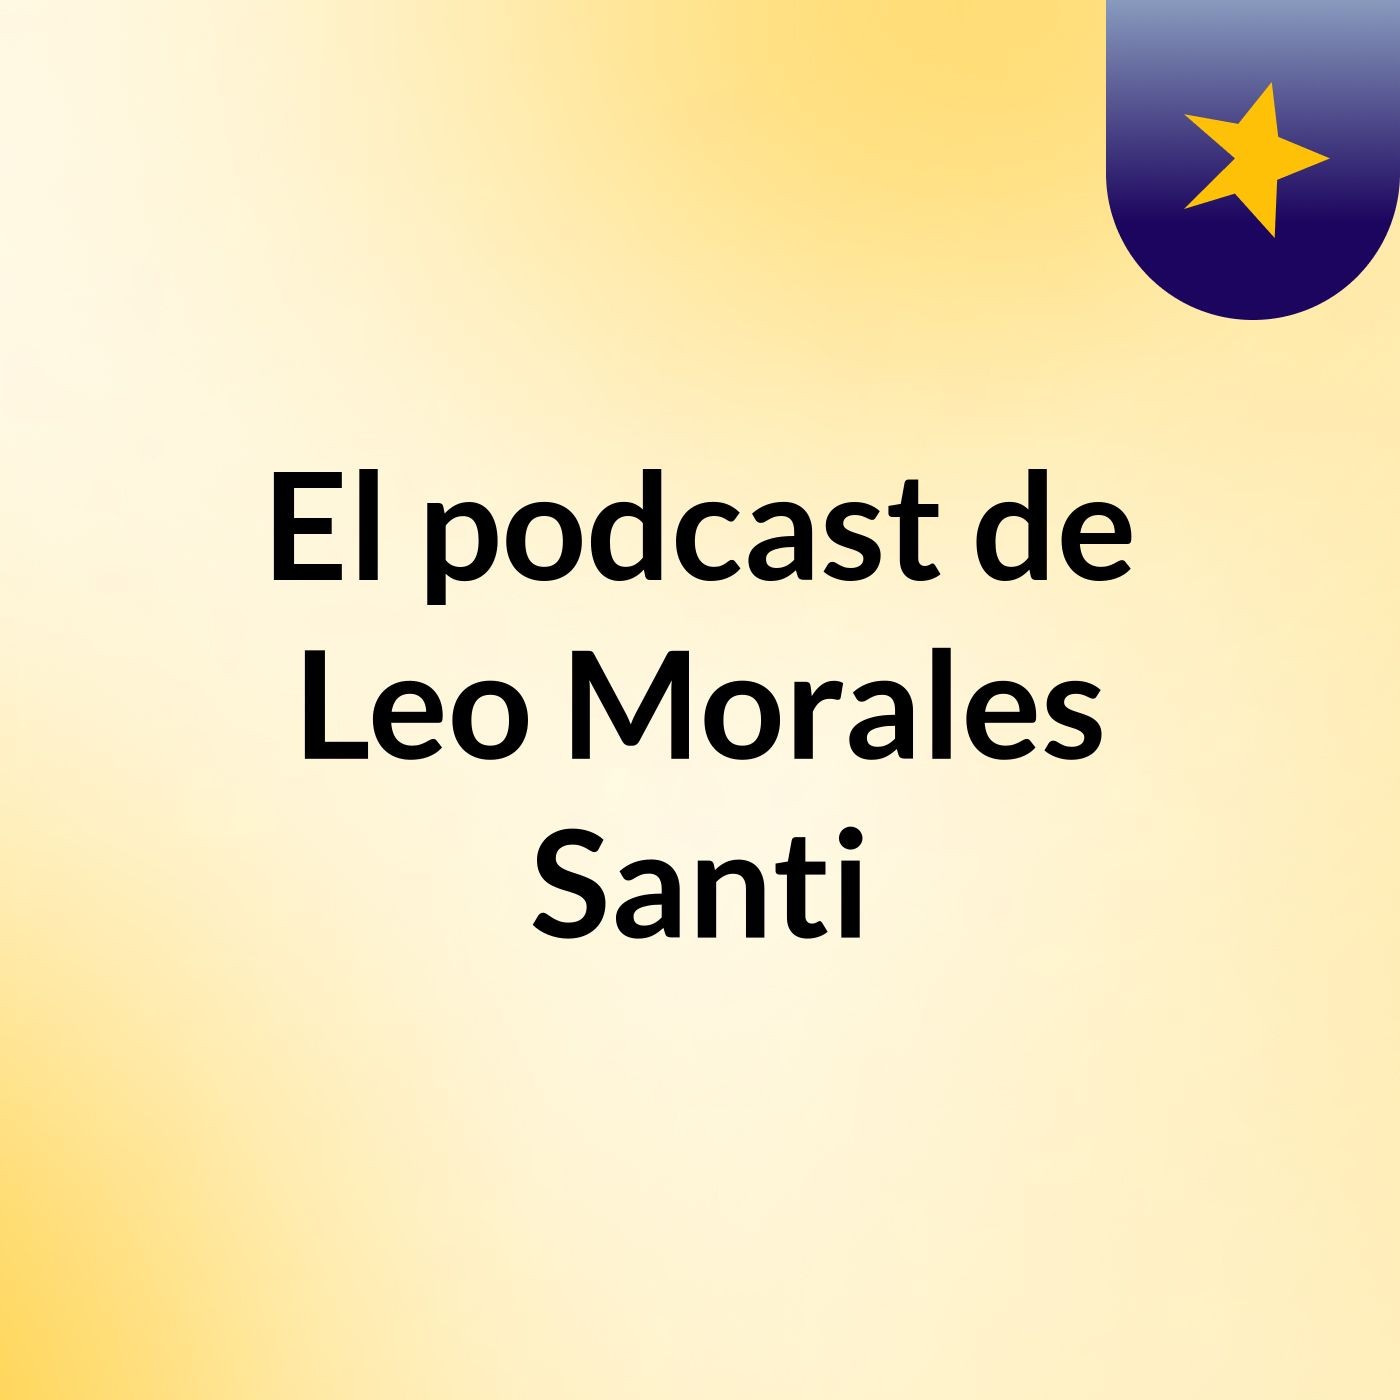 El podcast de Leo Morales Santi